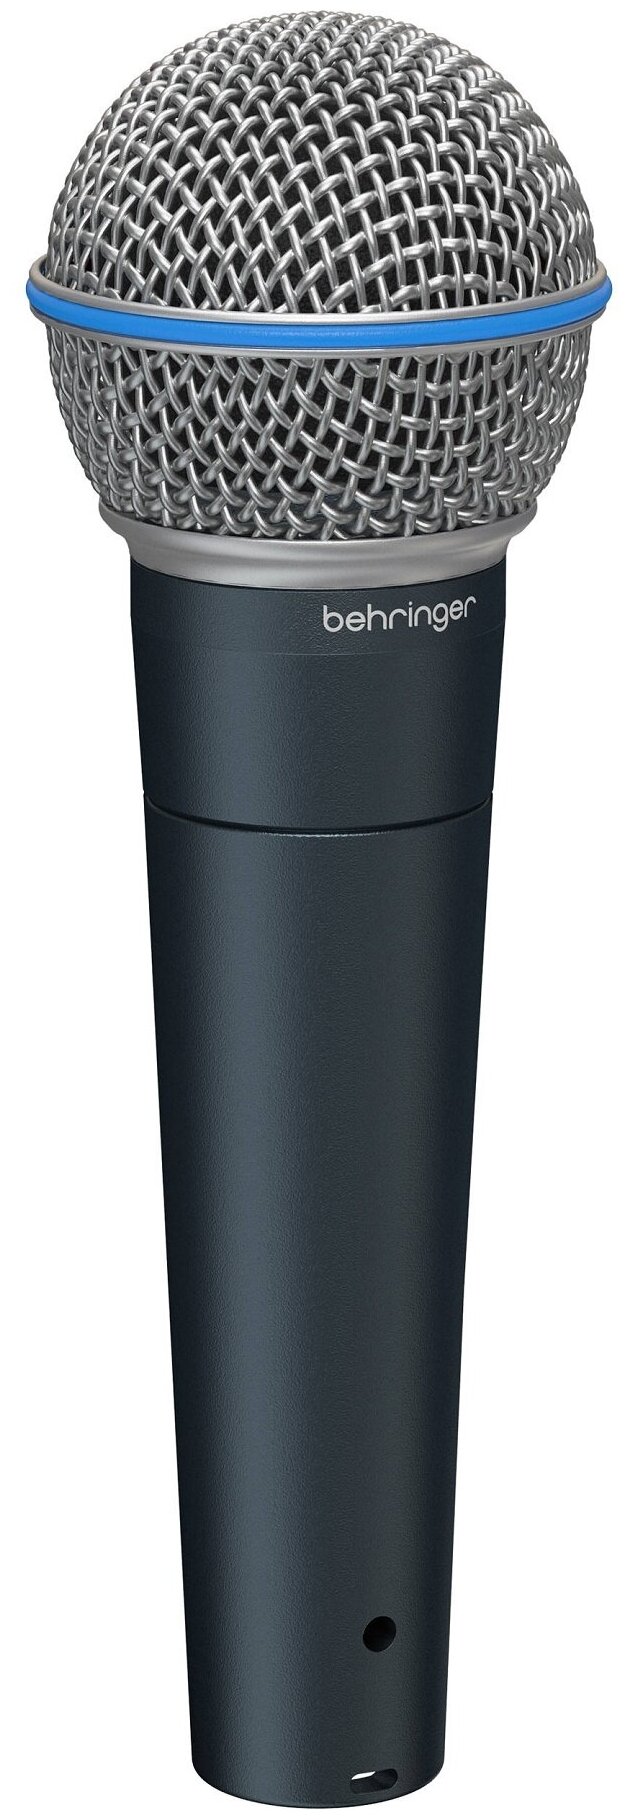 Behringer BA 85A Микрофон динамический суперкардиоидный BA 85A